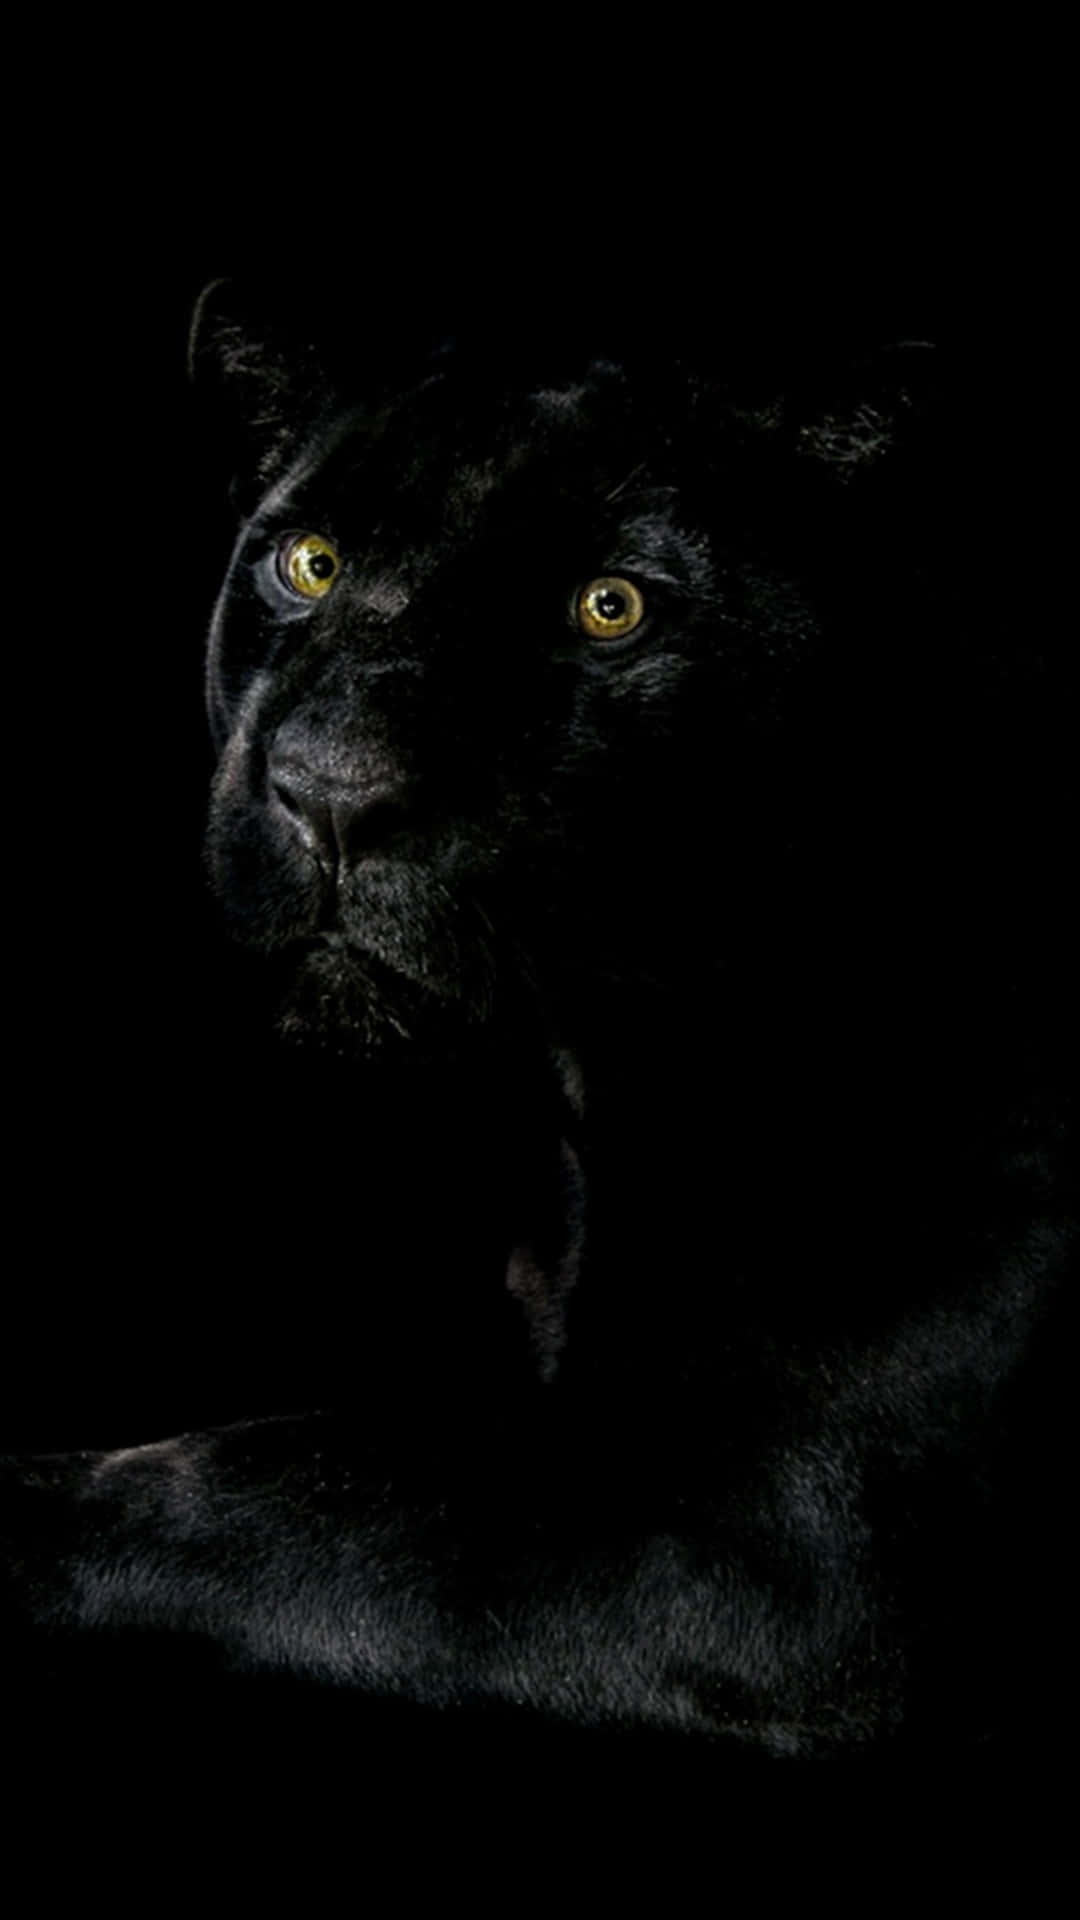 Einschwarzer Panther Sitzt Im Dunkeln. Wallpaper